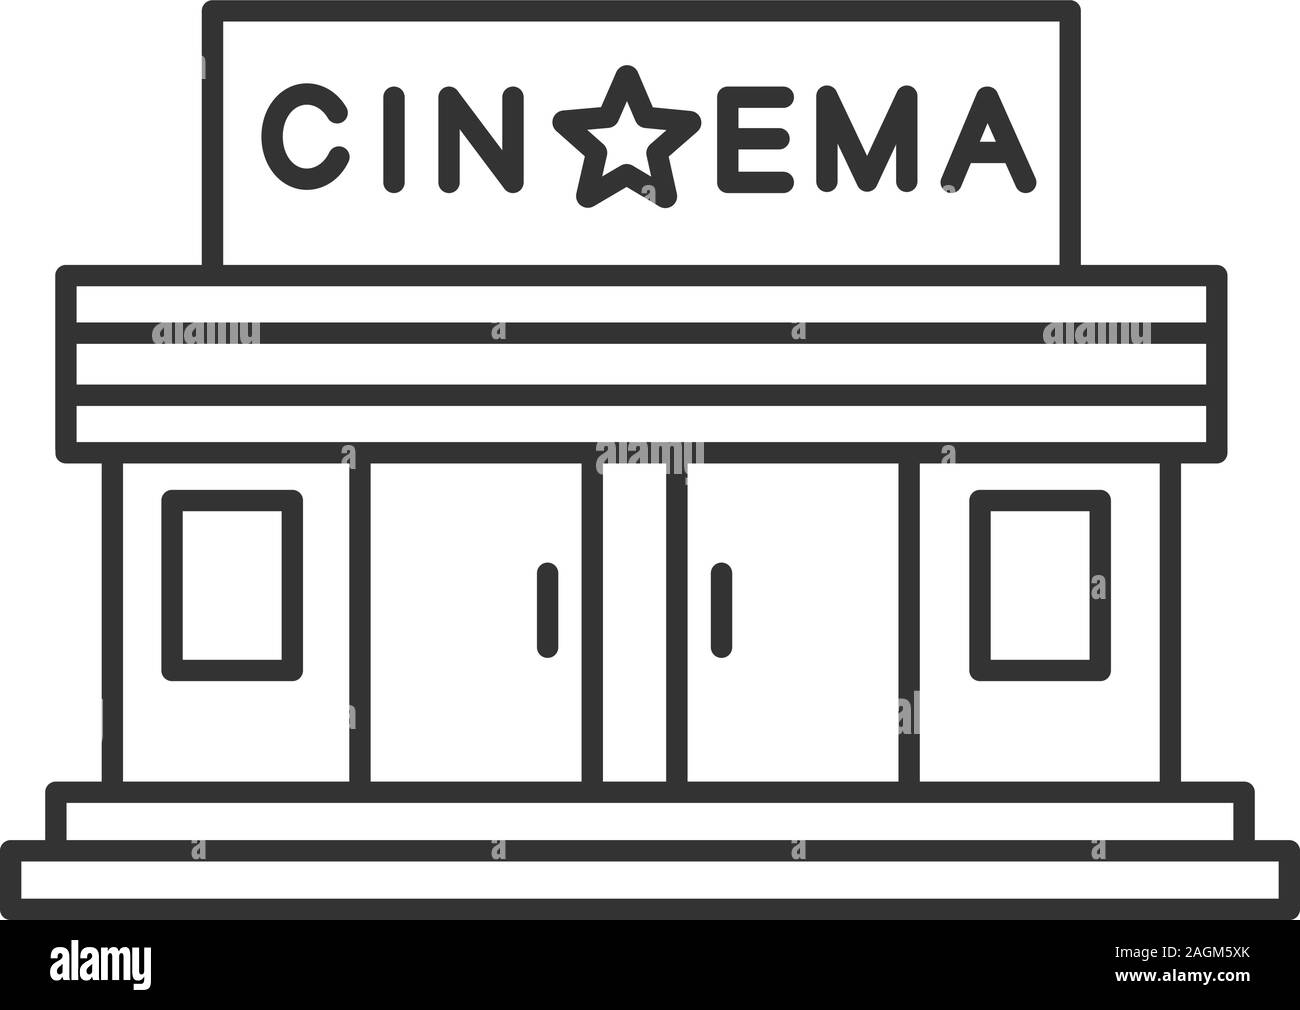 Buy Cinema Sketch Film Storyboard Notebook Storyboard Sketchbook Book  Online at Low Prices in India  Cinema Sketch Film Storyboard Notebook  Storyboard Sketchbook Reviews  Ratings  Amazonin